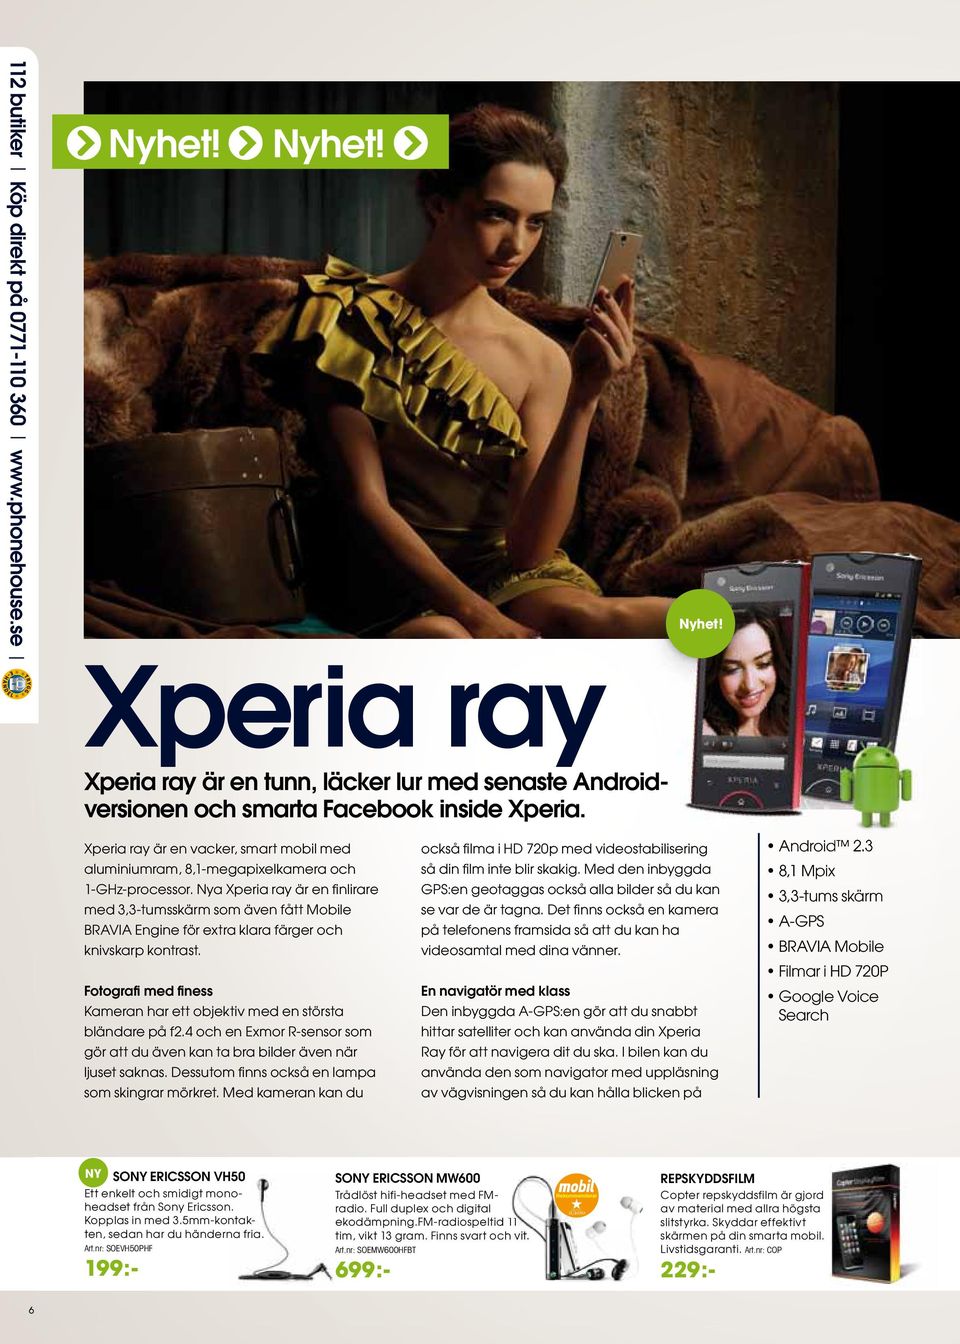 Nya Xperia ray är en fi nlirare med 3,3-tumsskärm som även fått Mobile BRAVIA Engine för extra klara färger och knivskarp kontrast.